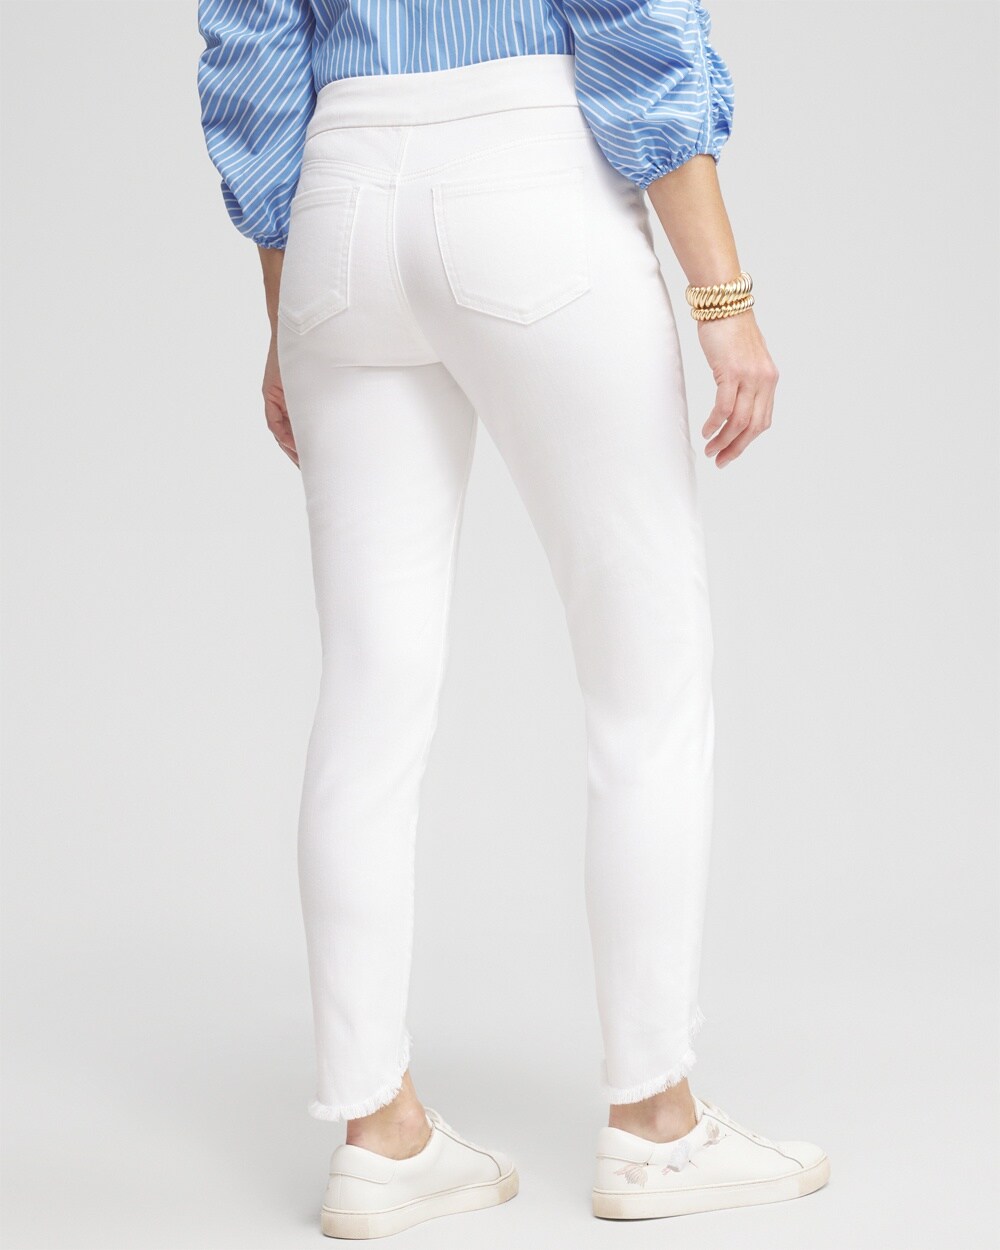 Puntoco Mujer Moda Casual Suelto Lavado Denim Ripped Jeans Casual Sólido  Elástico Pantalones Delgados Puntoco Puntoco-2845